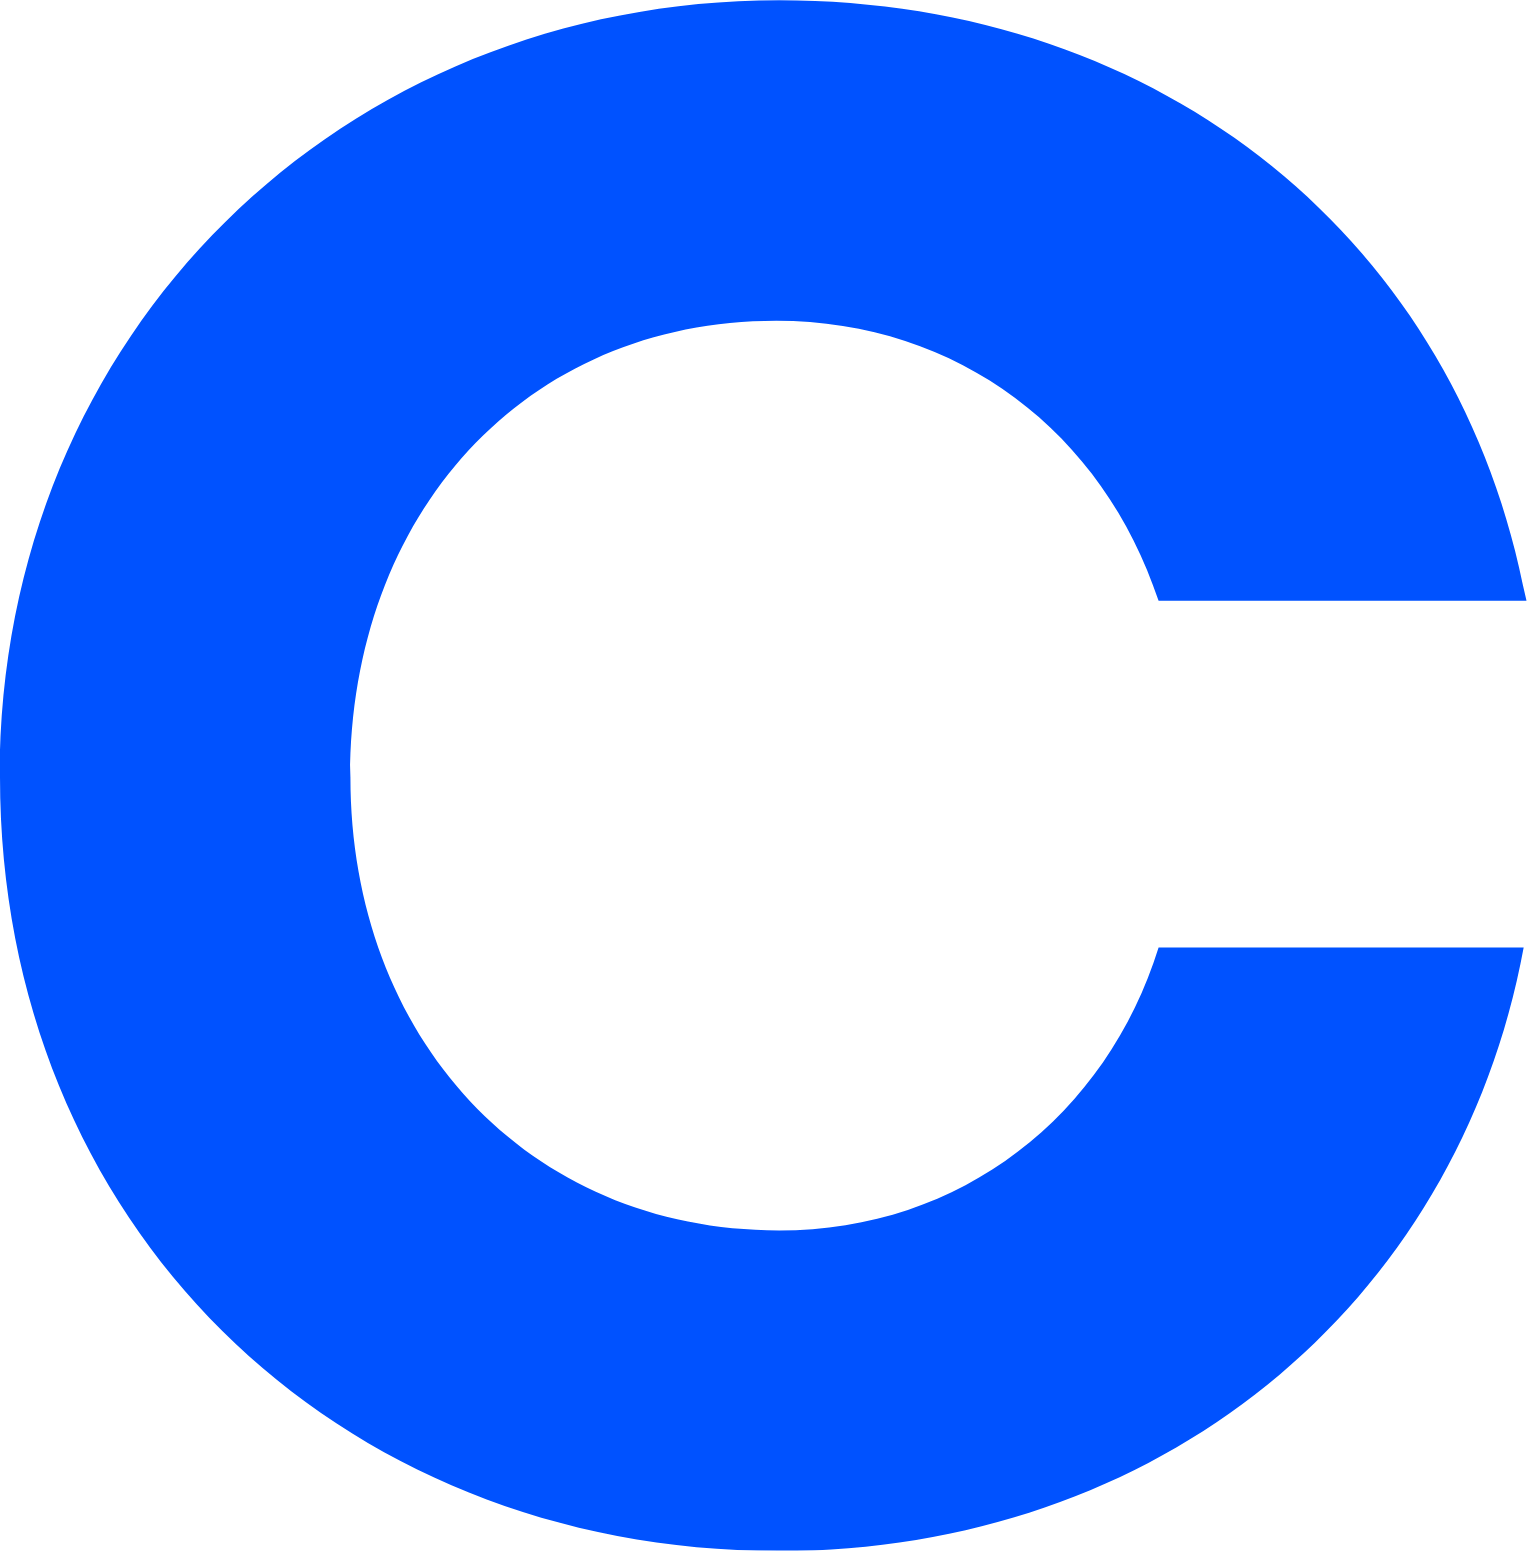 coinbase stock symbol